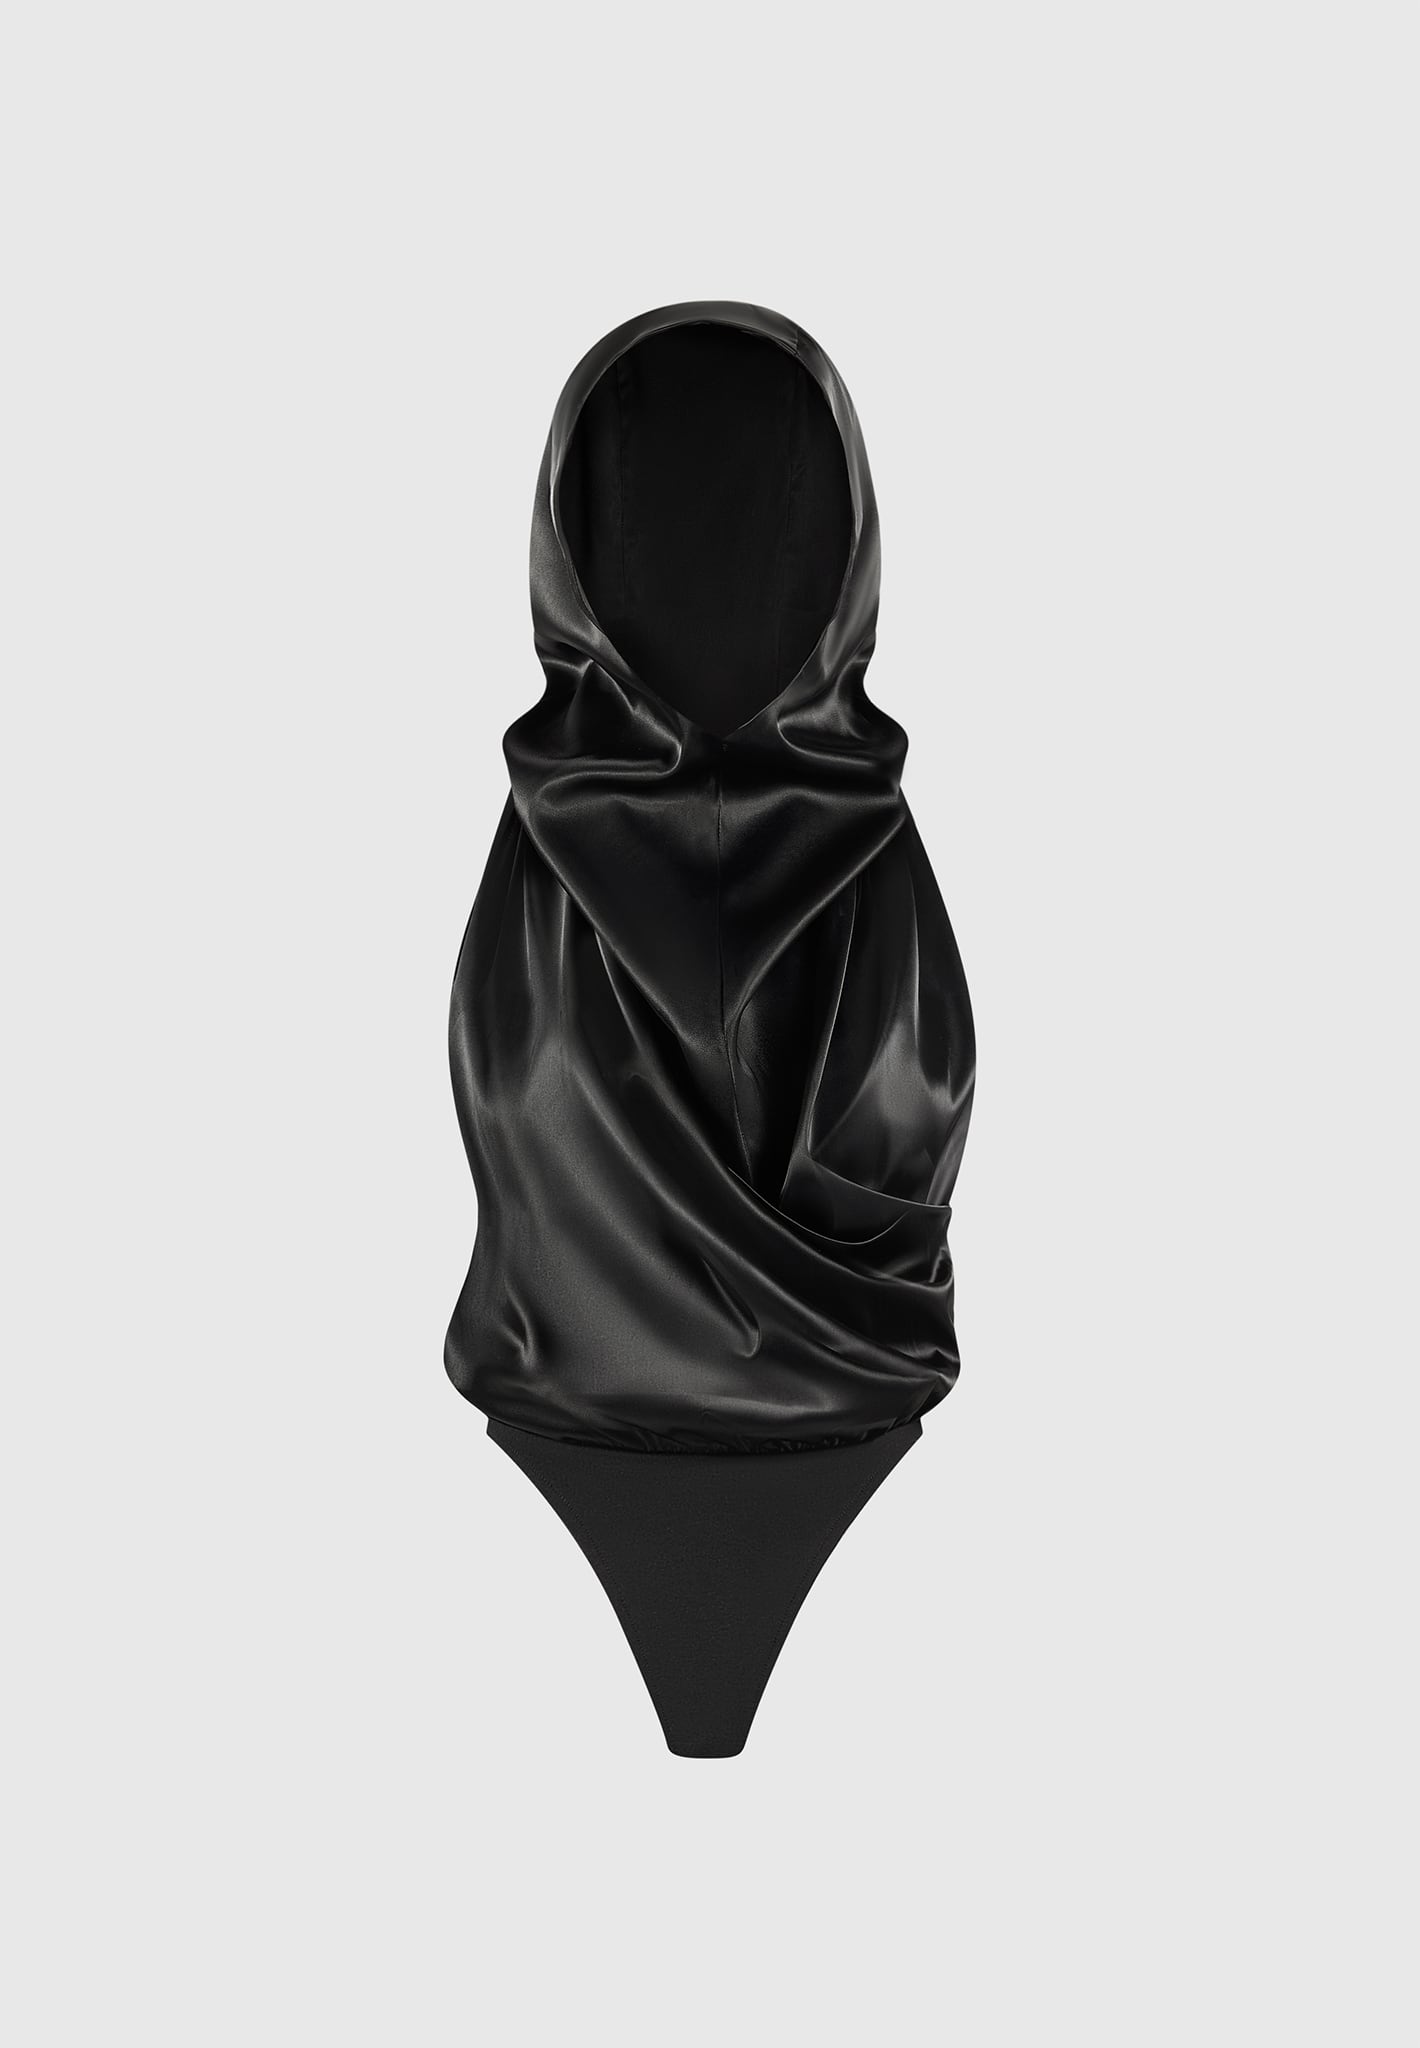 Vogue 9298: Deep Plunge Neckline Bodysuit — strictstitchery